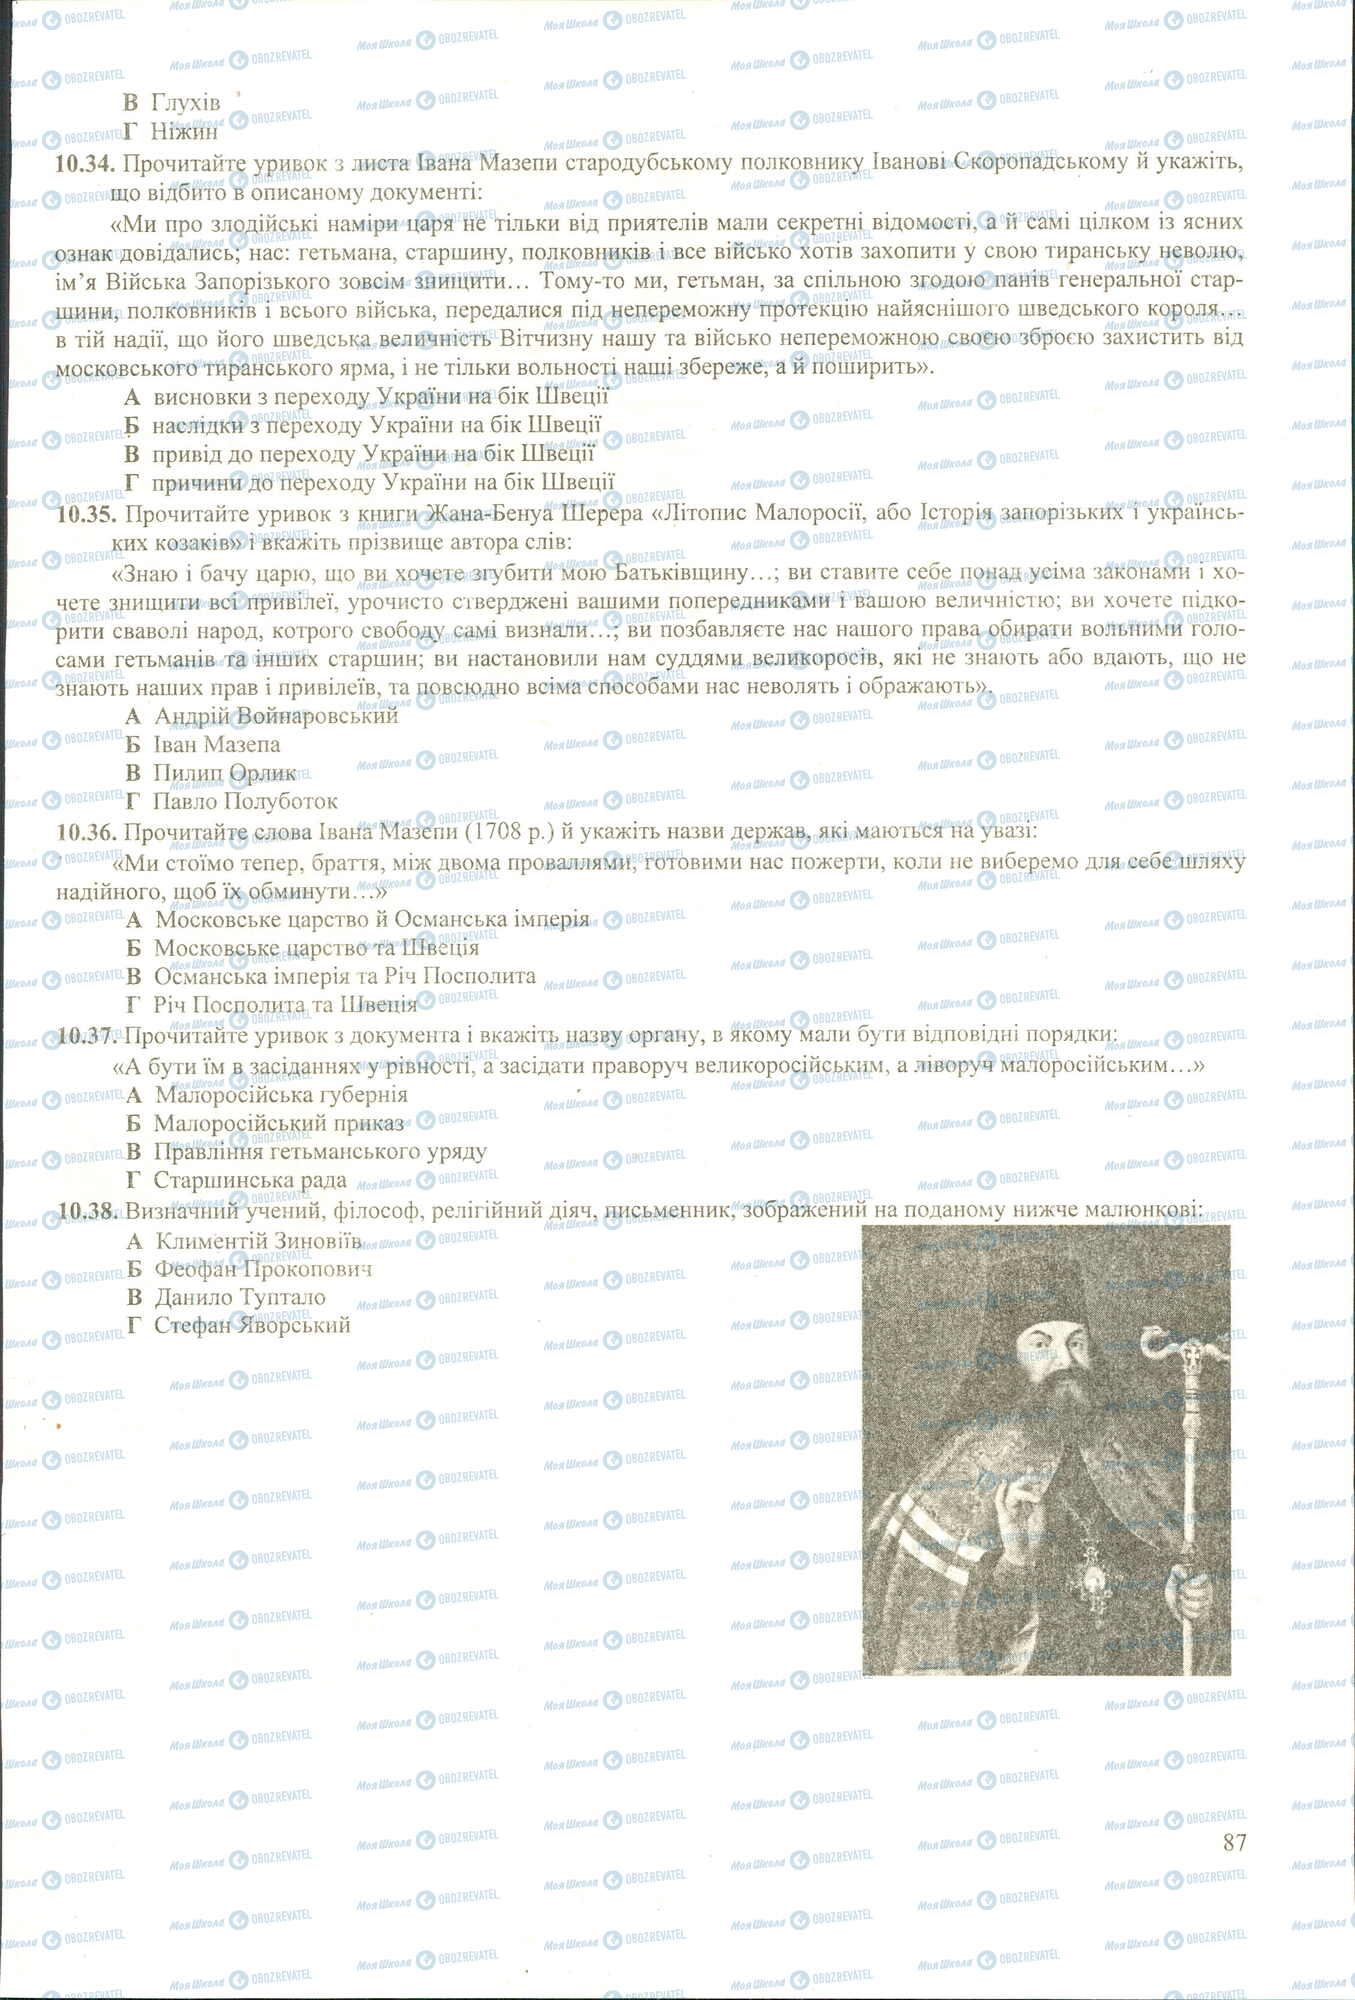 ЗНО История Украины 11 класс страница 34-38